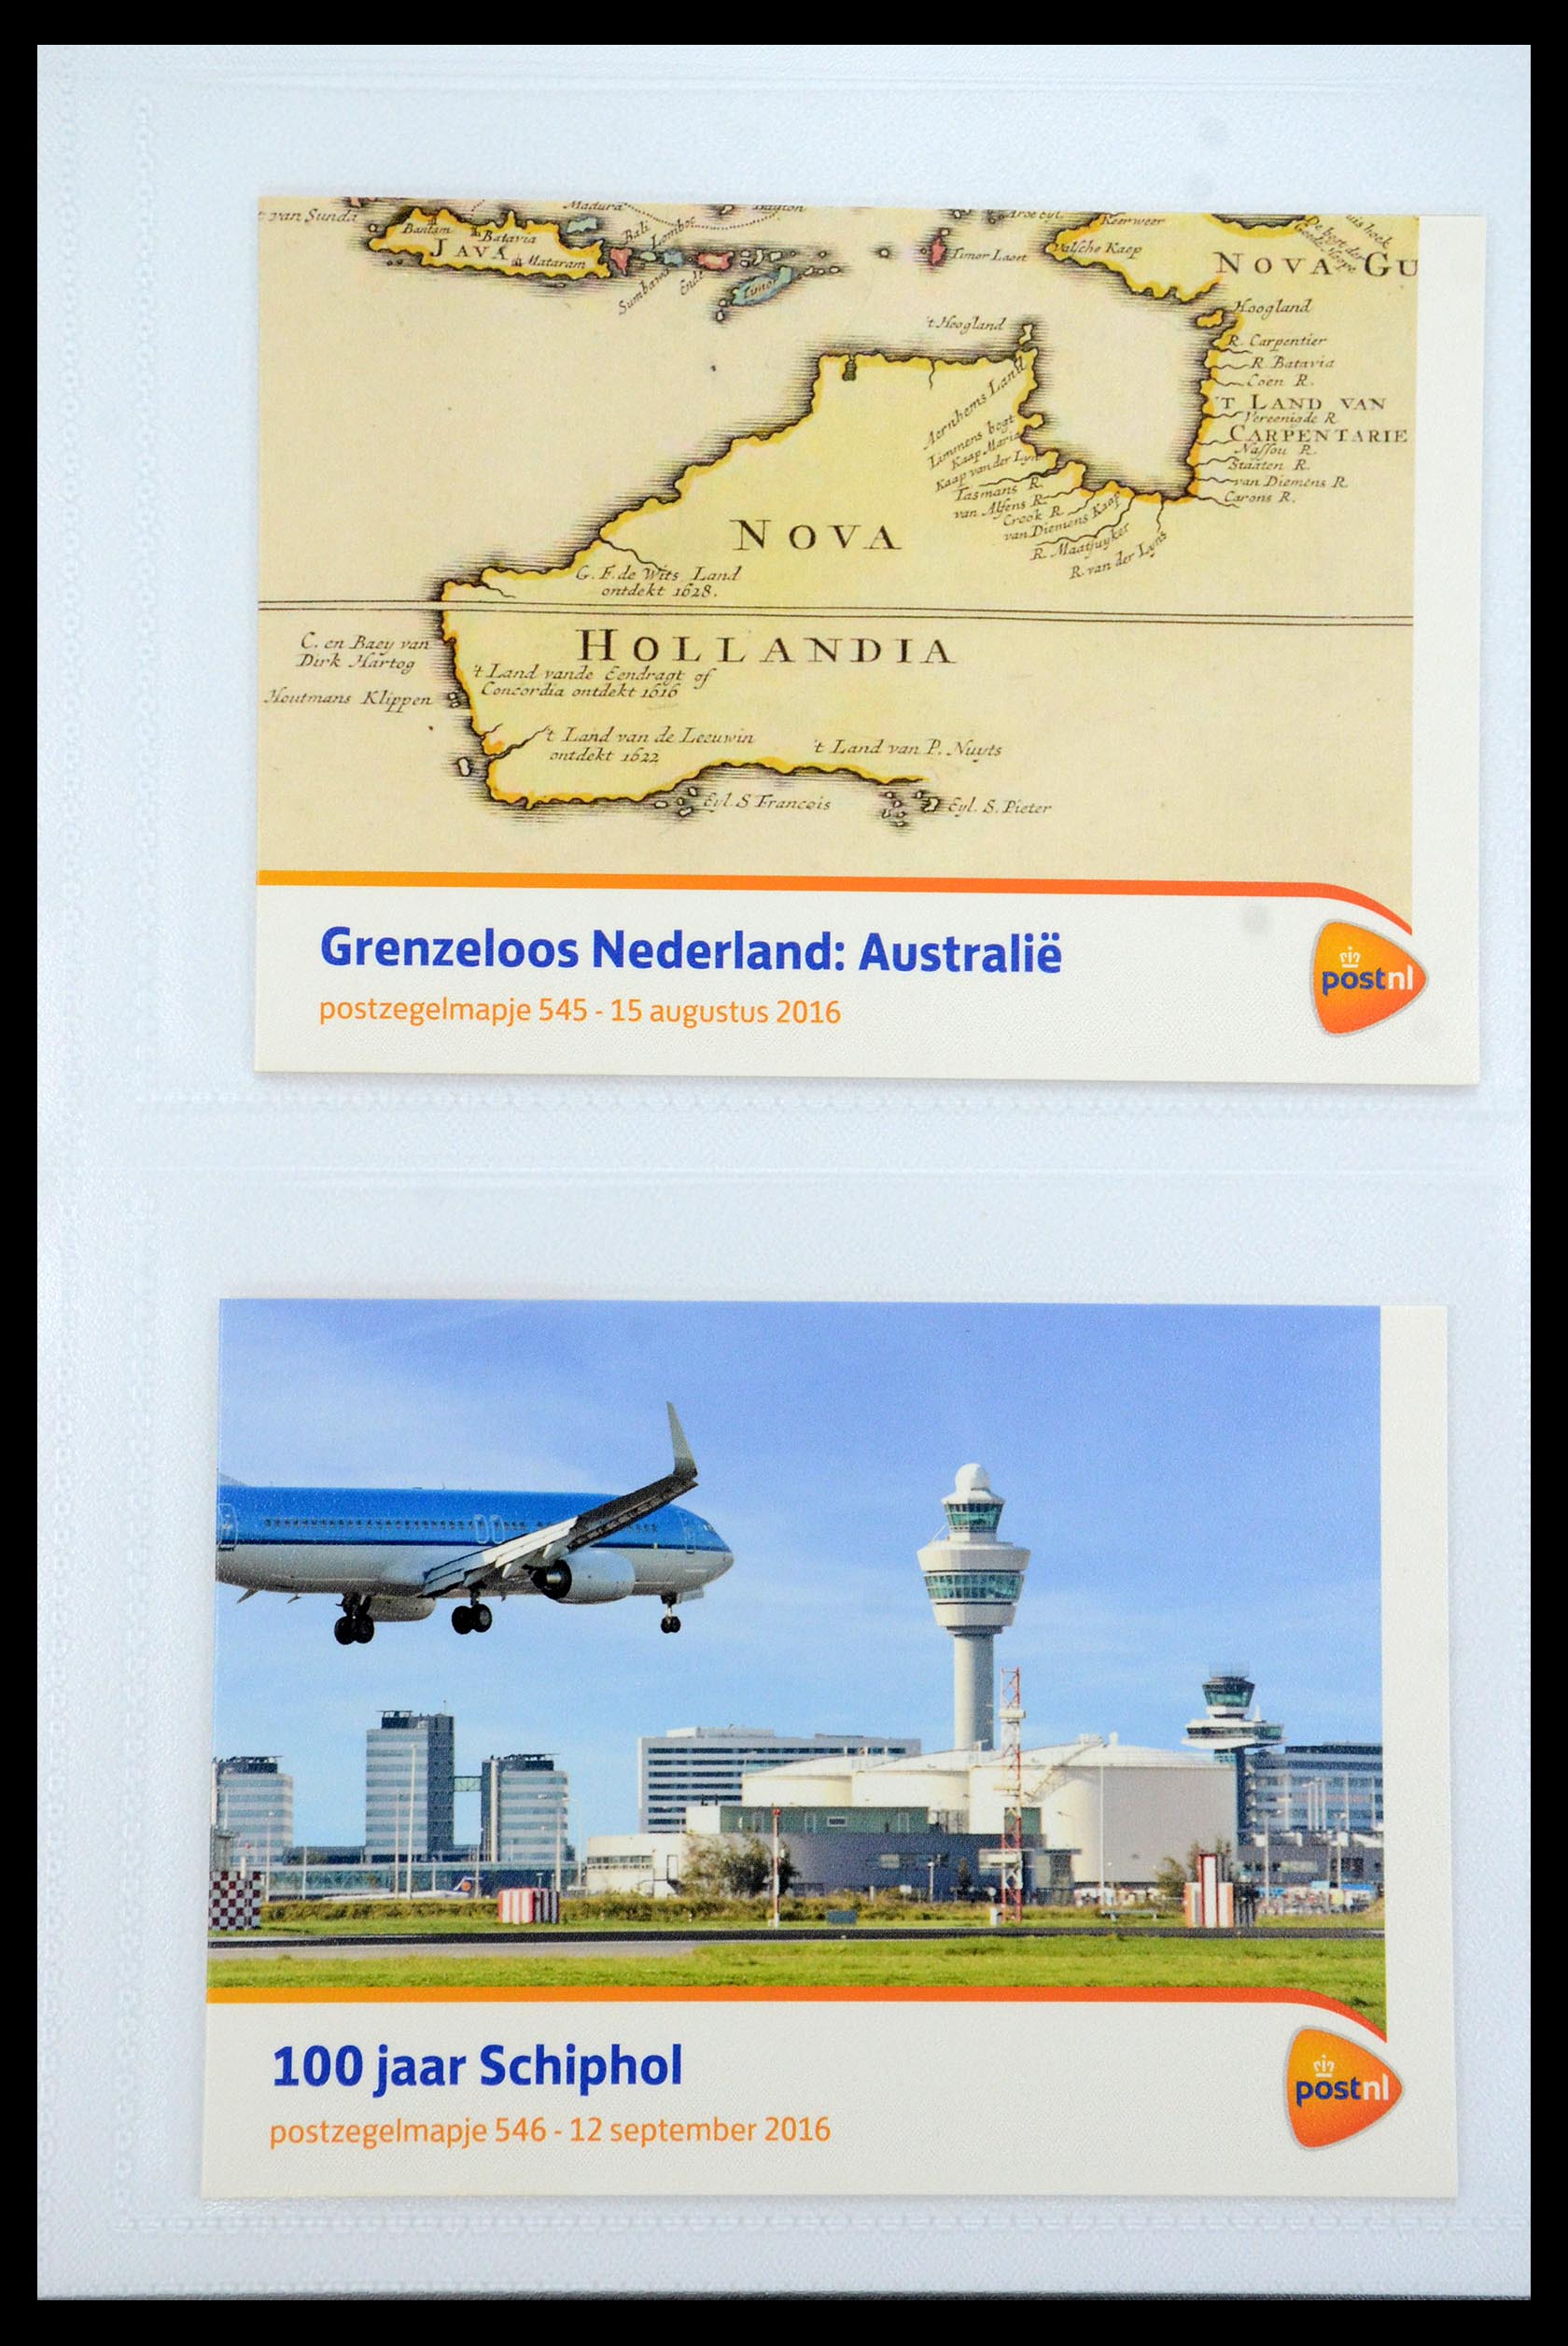 35947 325 - Stamp Collection 35947 Netherlands PTT presentation packs 1982-2019!